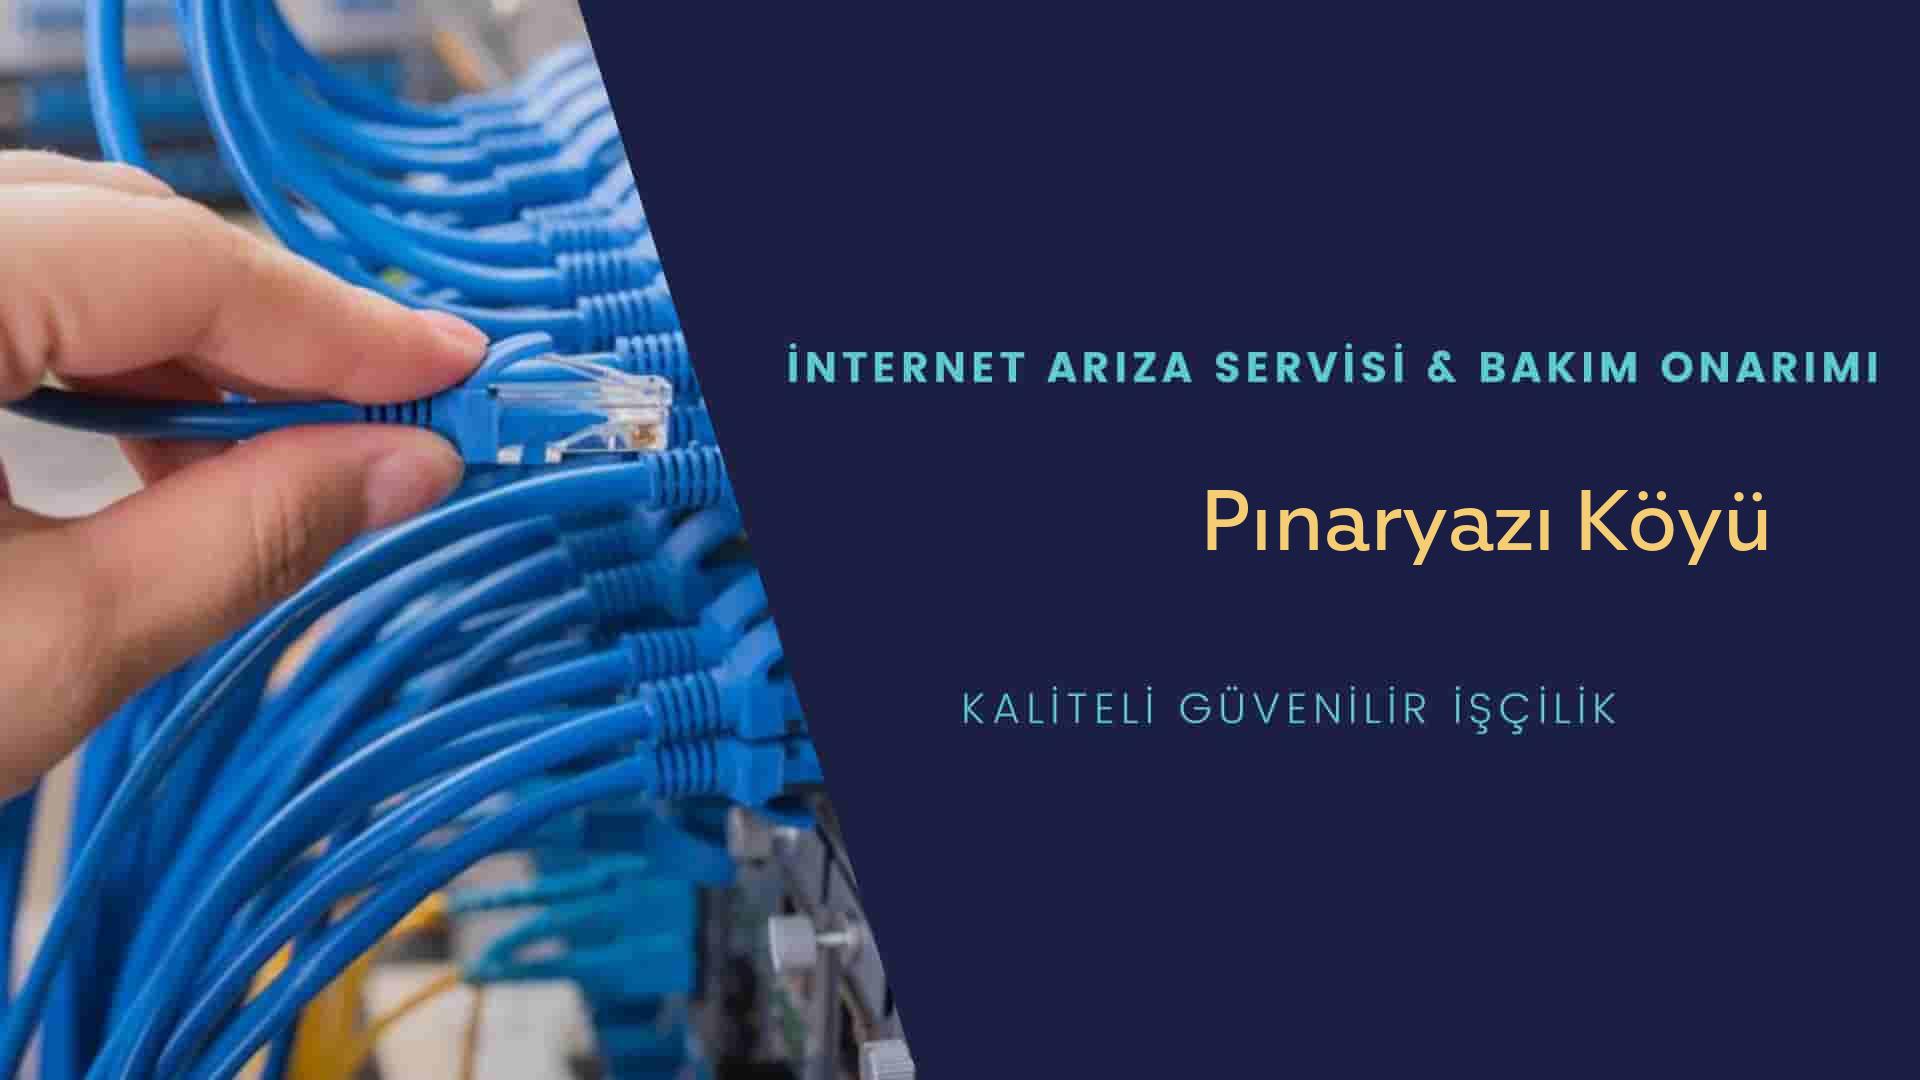 Pınaryazı Köyü internet kablosu çekimi yapan yerler veya elektrikçiler mi? arıyorsunuz doğru yerdesiniz o zaman sizlere 7/24 yardımcı olacak profesyonel ustalarımız bir telefon kadar yakındır size.